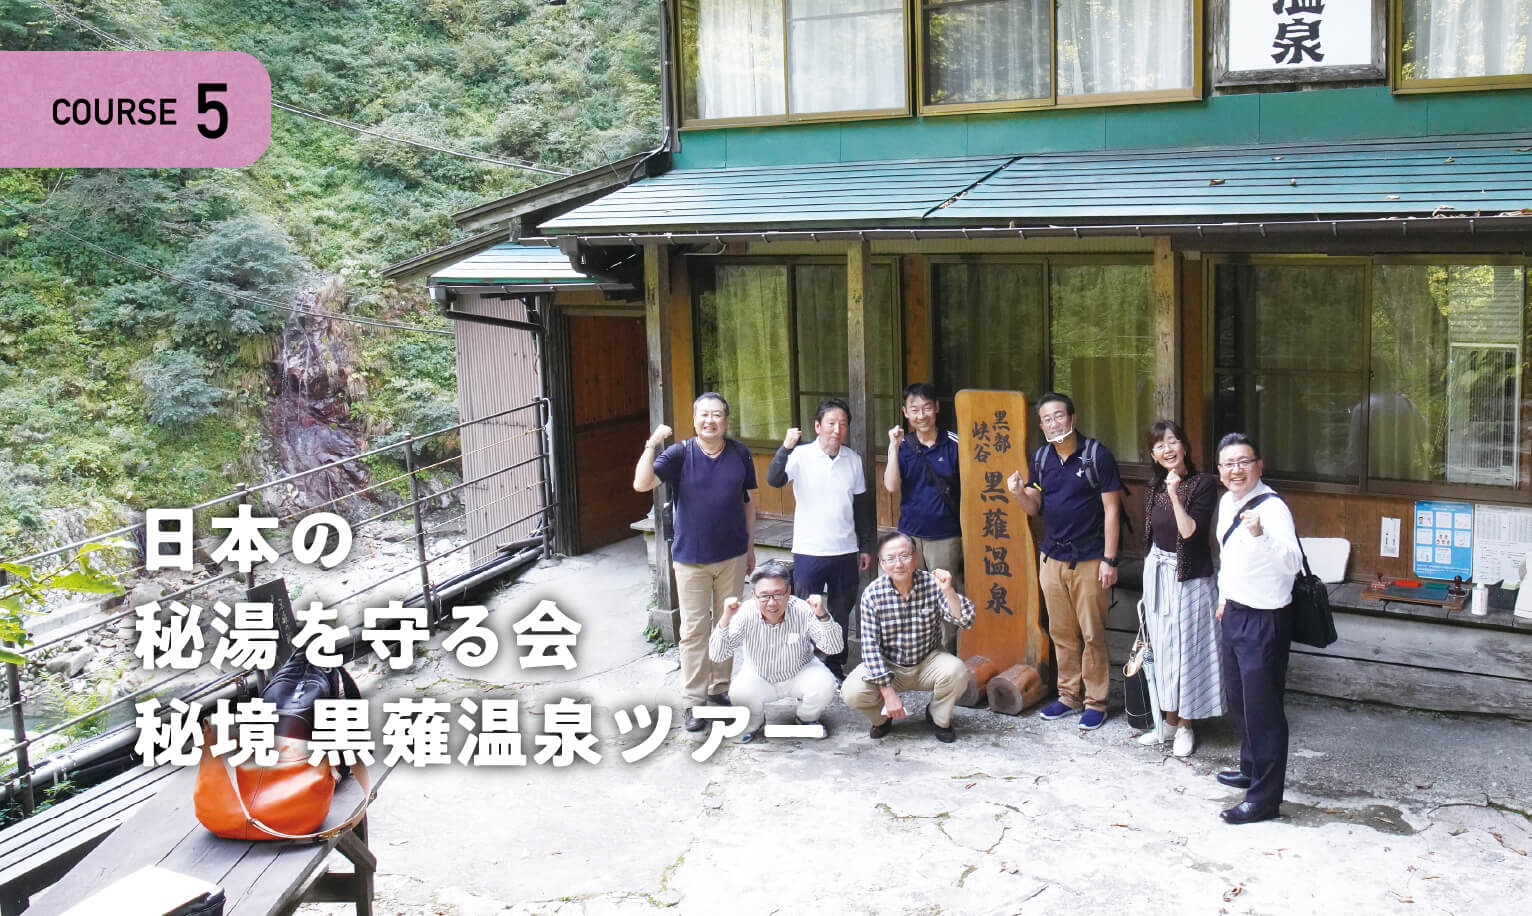 日本の秘湯を守る会 秘境 黒薙温泉ツアー